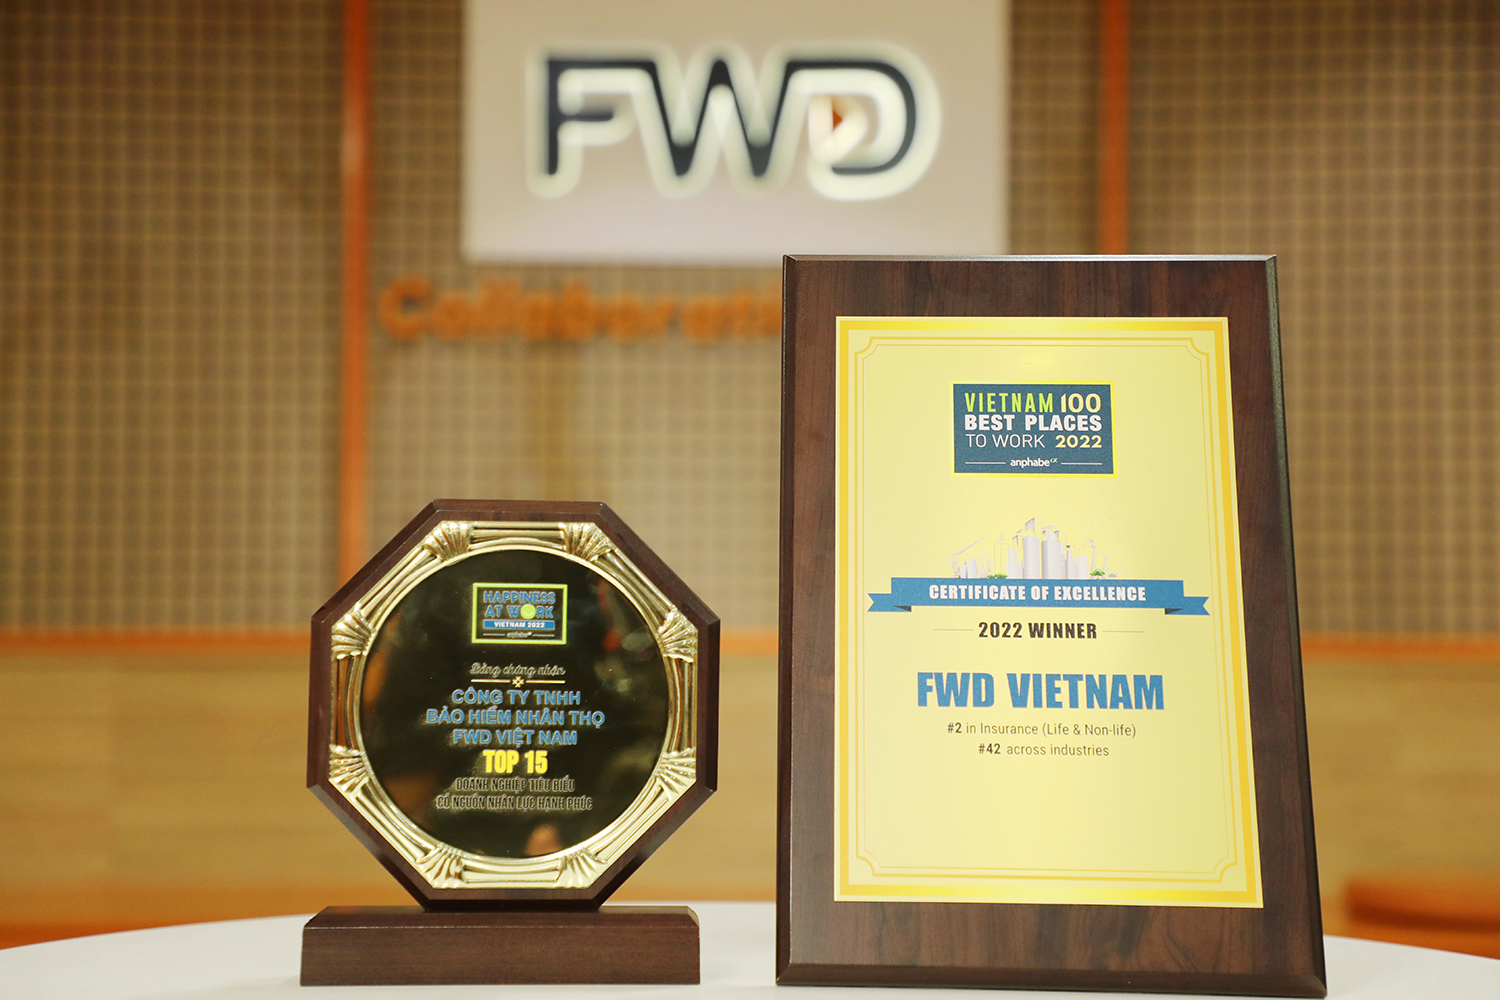 FWD liên tục được vinh danh tại nhiều giải thưởng uy tín về nhân sự trong nước và quốc tế - 2